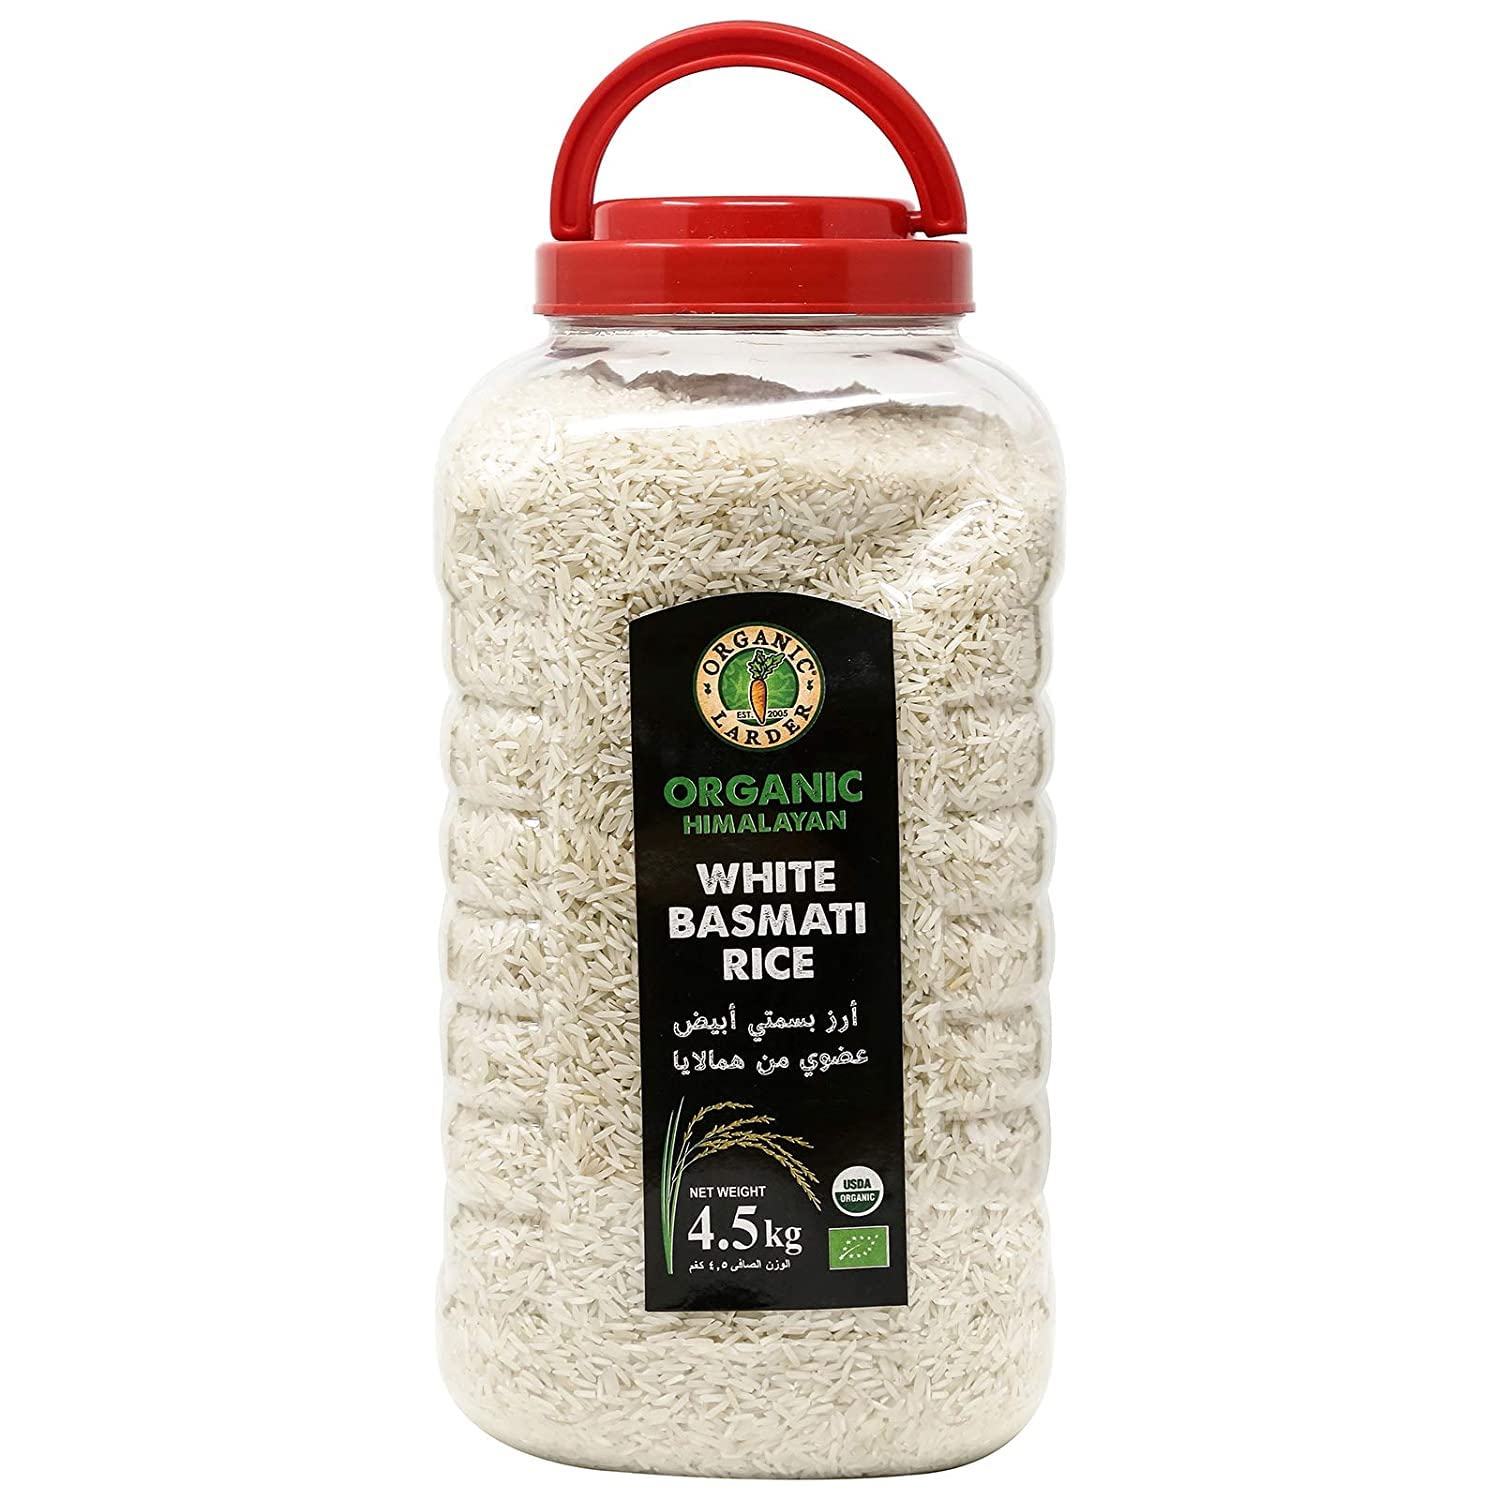 ORGANIC LARDER Himalayan White Basmati Rice, 4.5Kg - Organic, Vegan, Natural